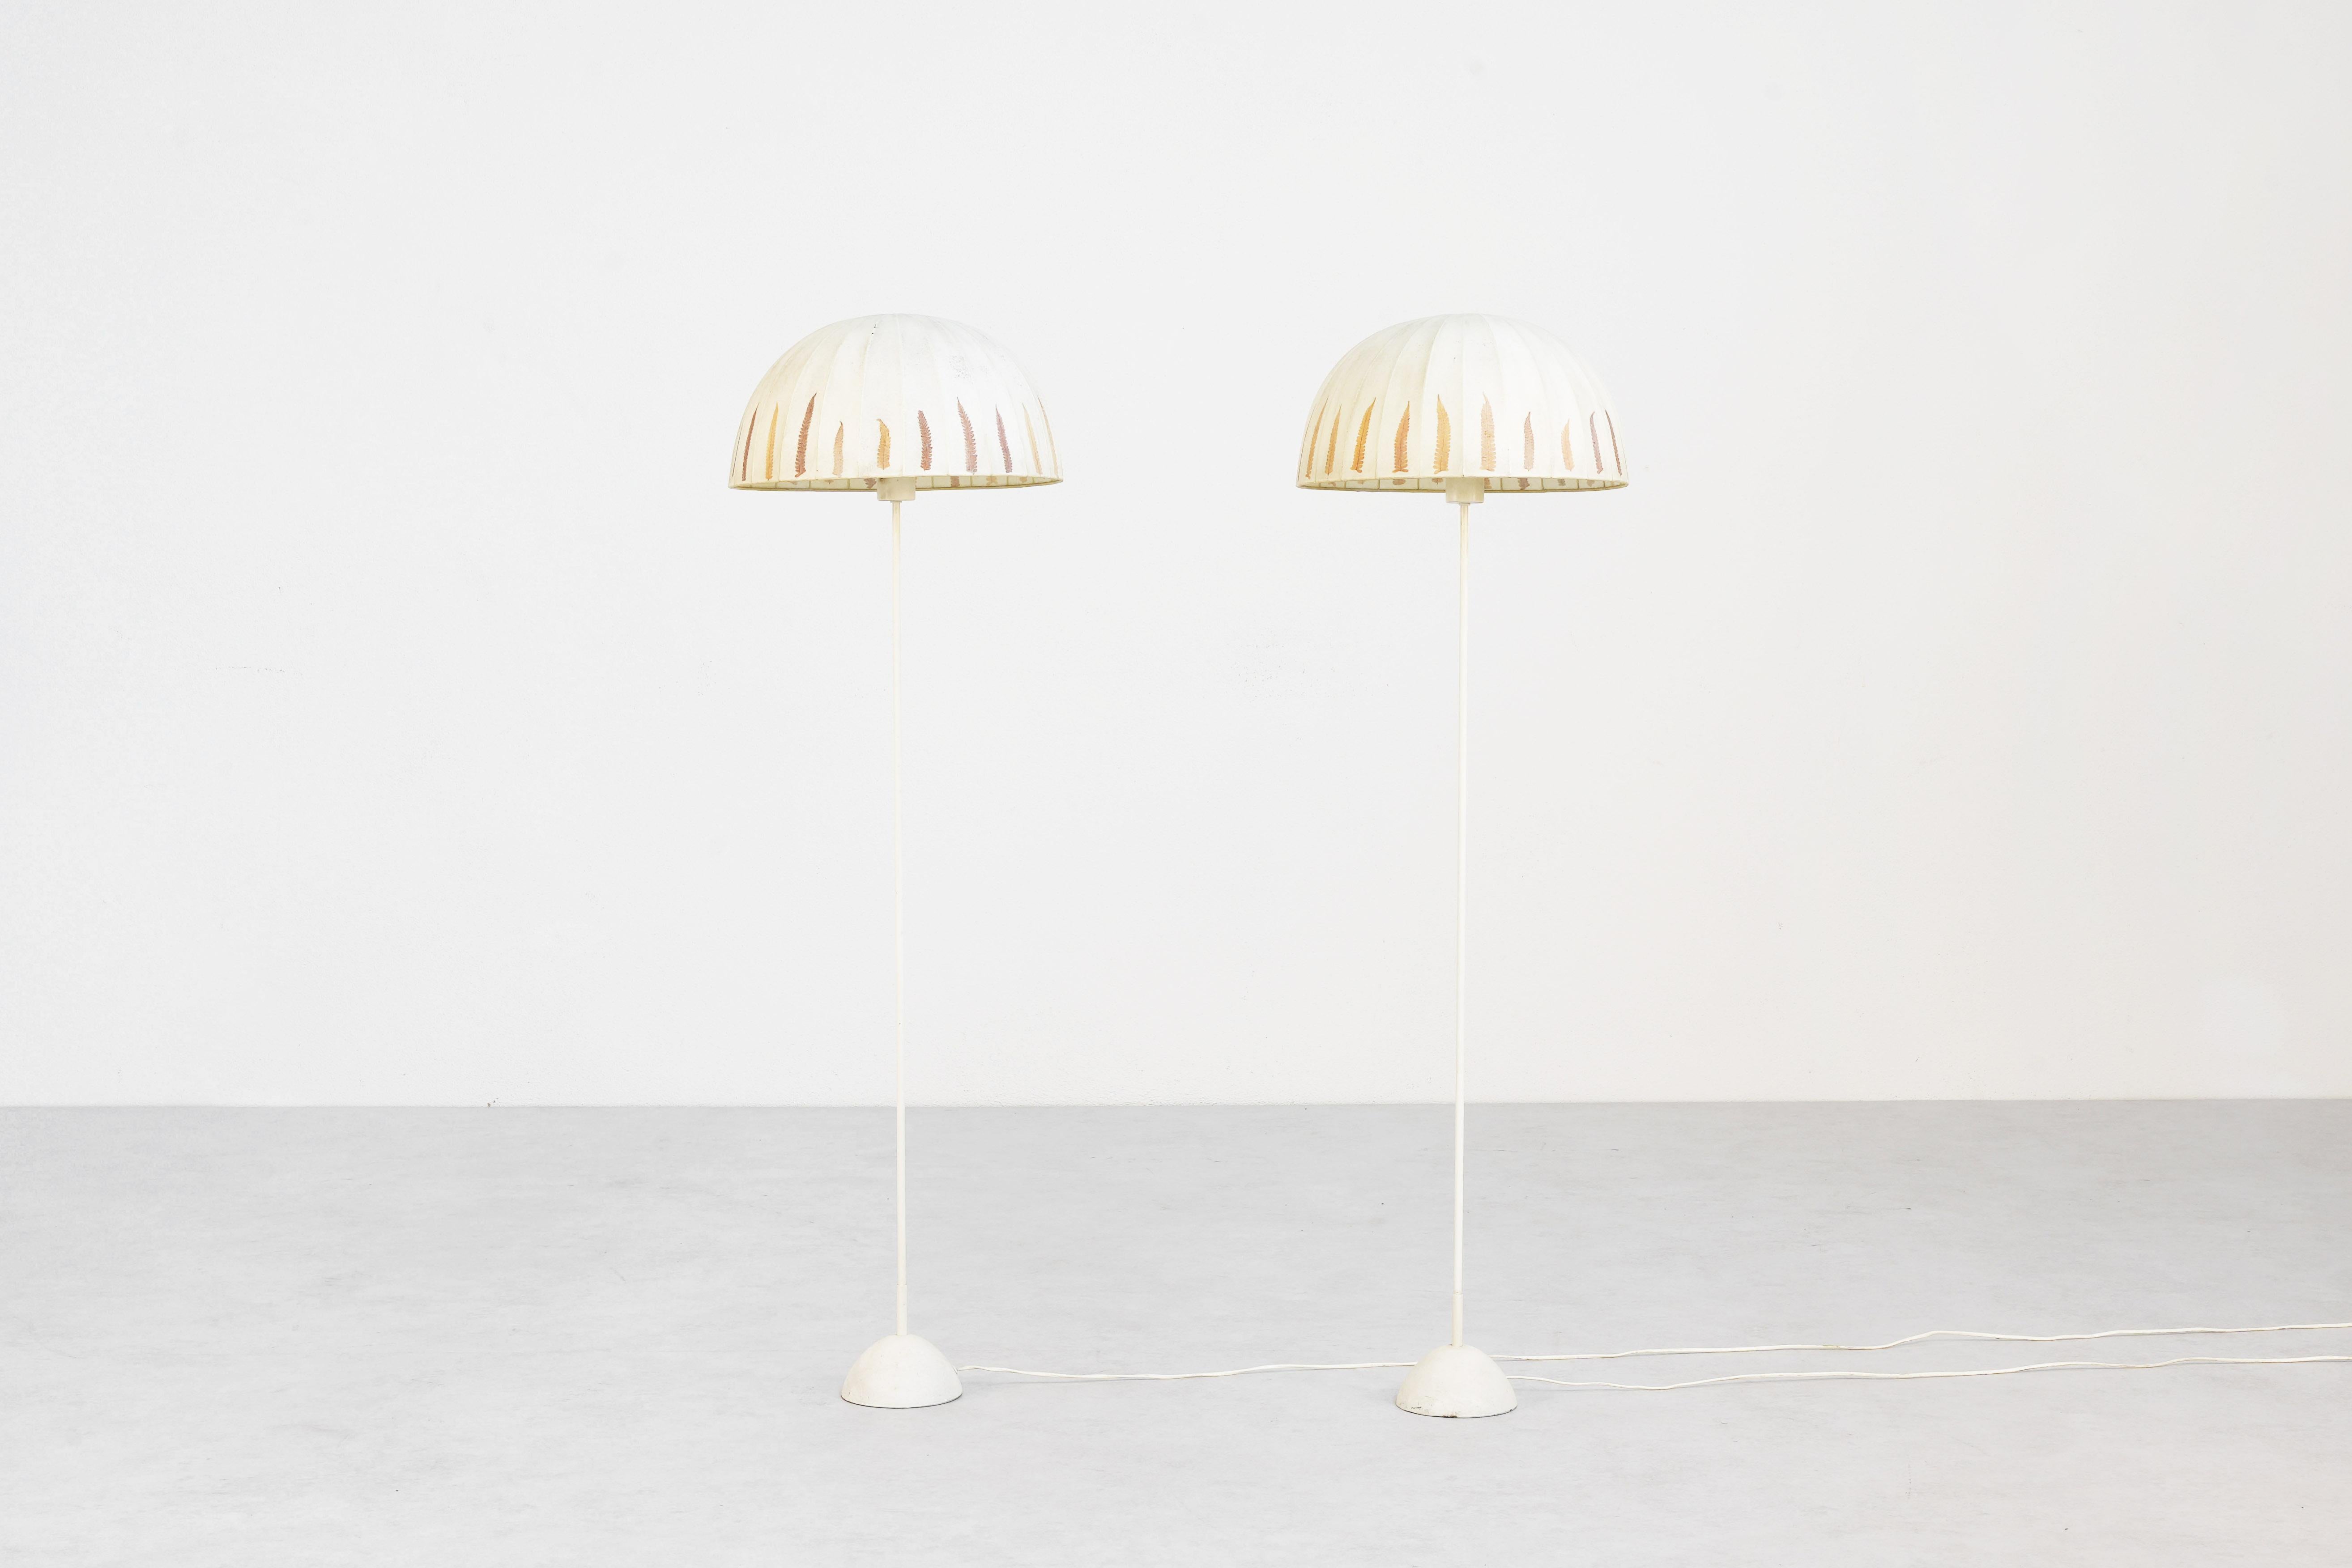 Une belle paire de lampadaires rares conçus par Hans-Agne Jakobsson dans les années 1960 et fabriqués par Markaryd en Suède. Les deux lampes sont en bon état avec des signes mineurs d'utilisation et d'âge, et tout reste dans son état d'origine. Les